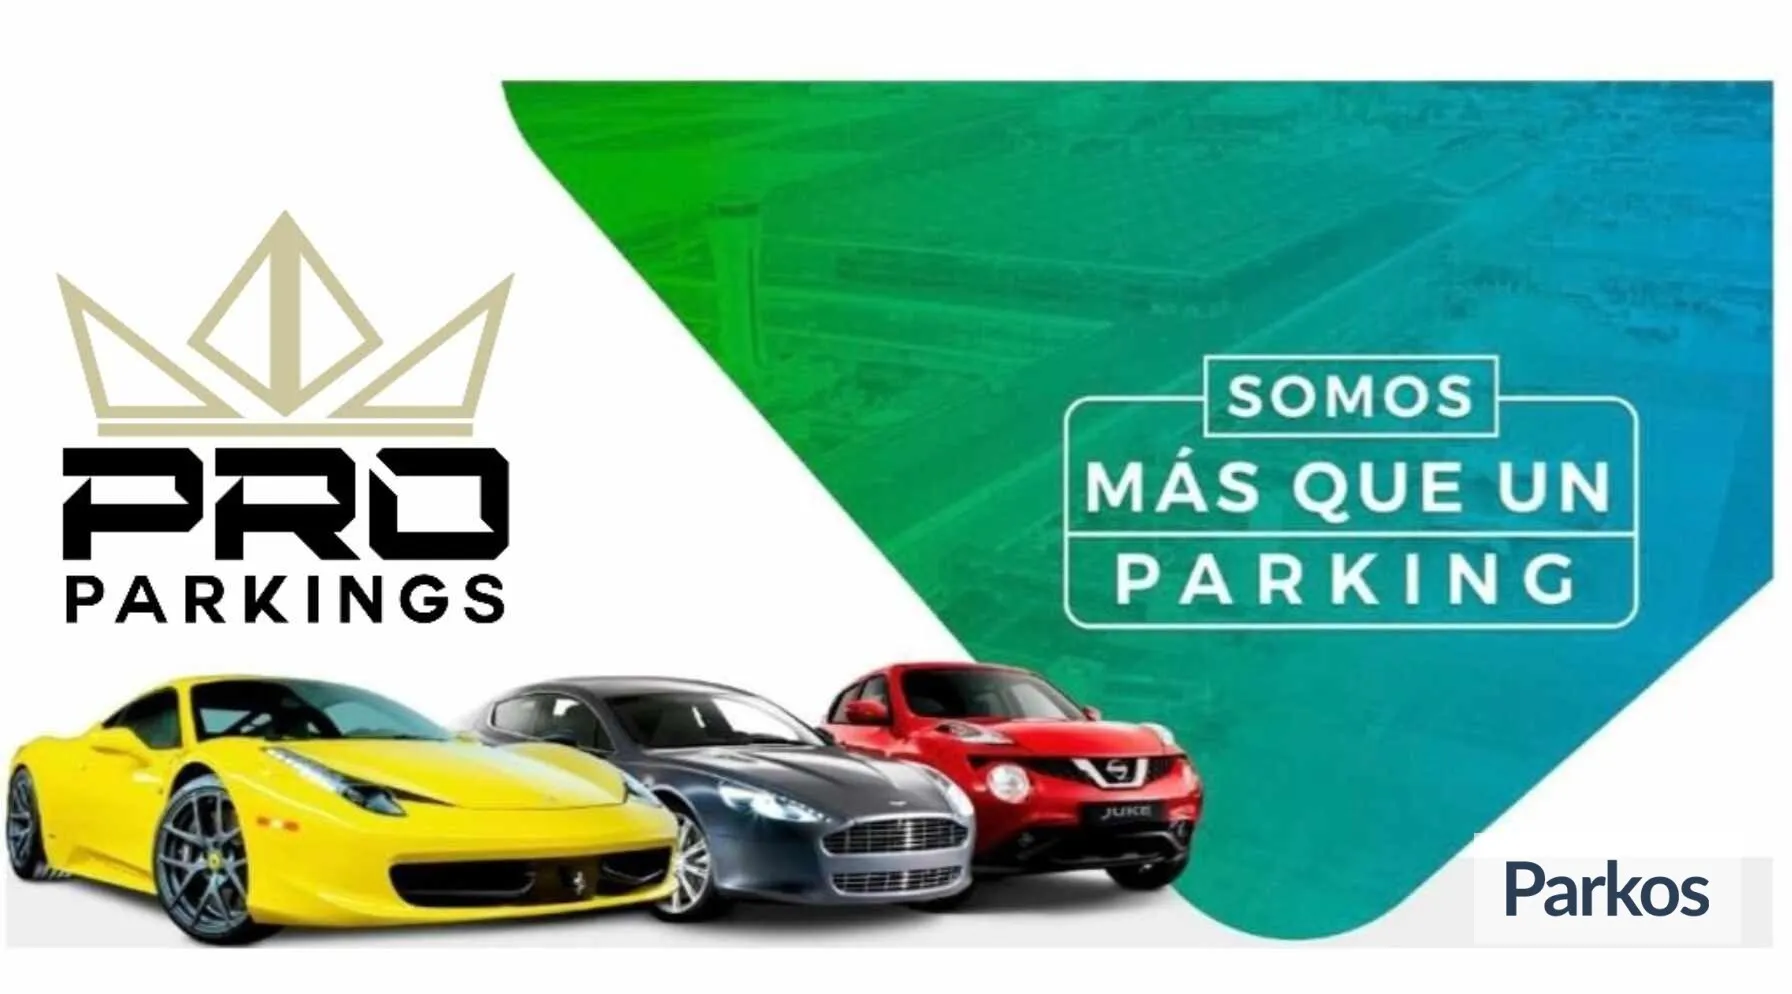 Pro Parkings - Parking Aeropuerto Málaga-Costa Del Sol - picture 1